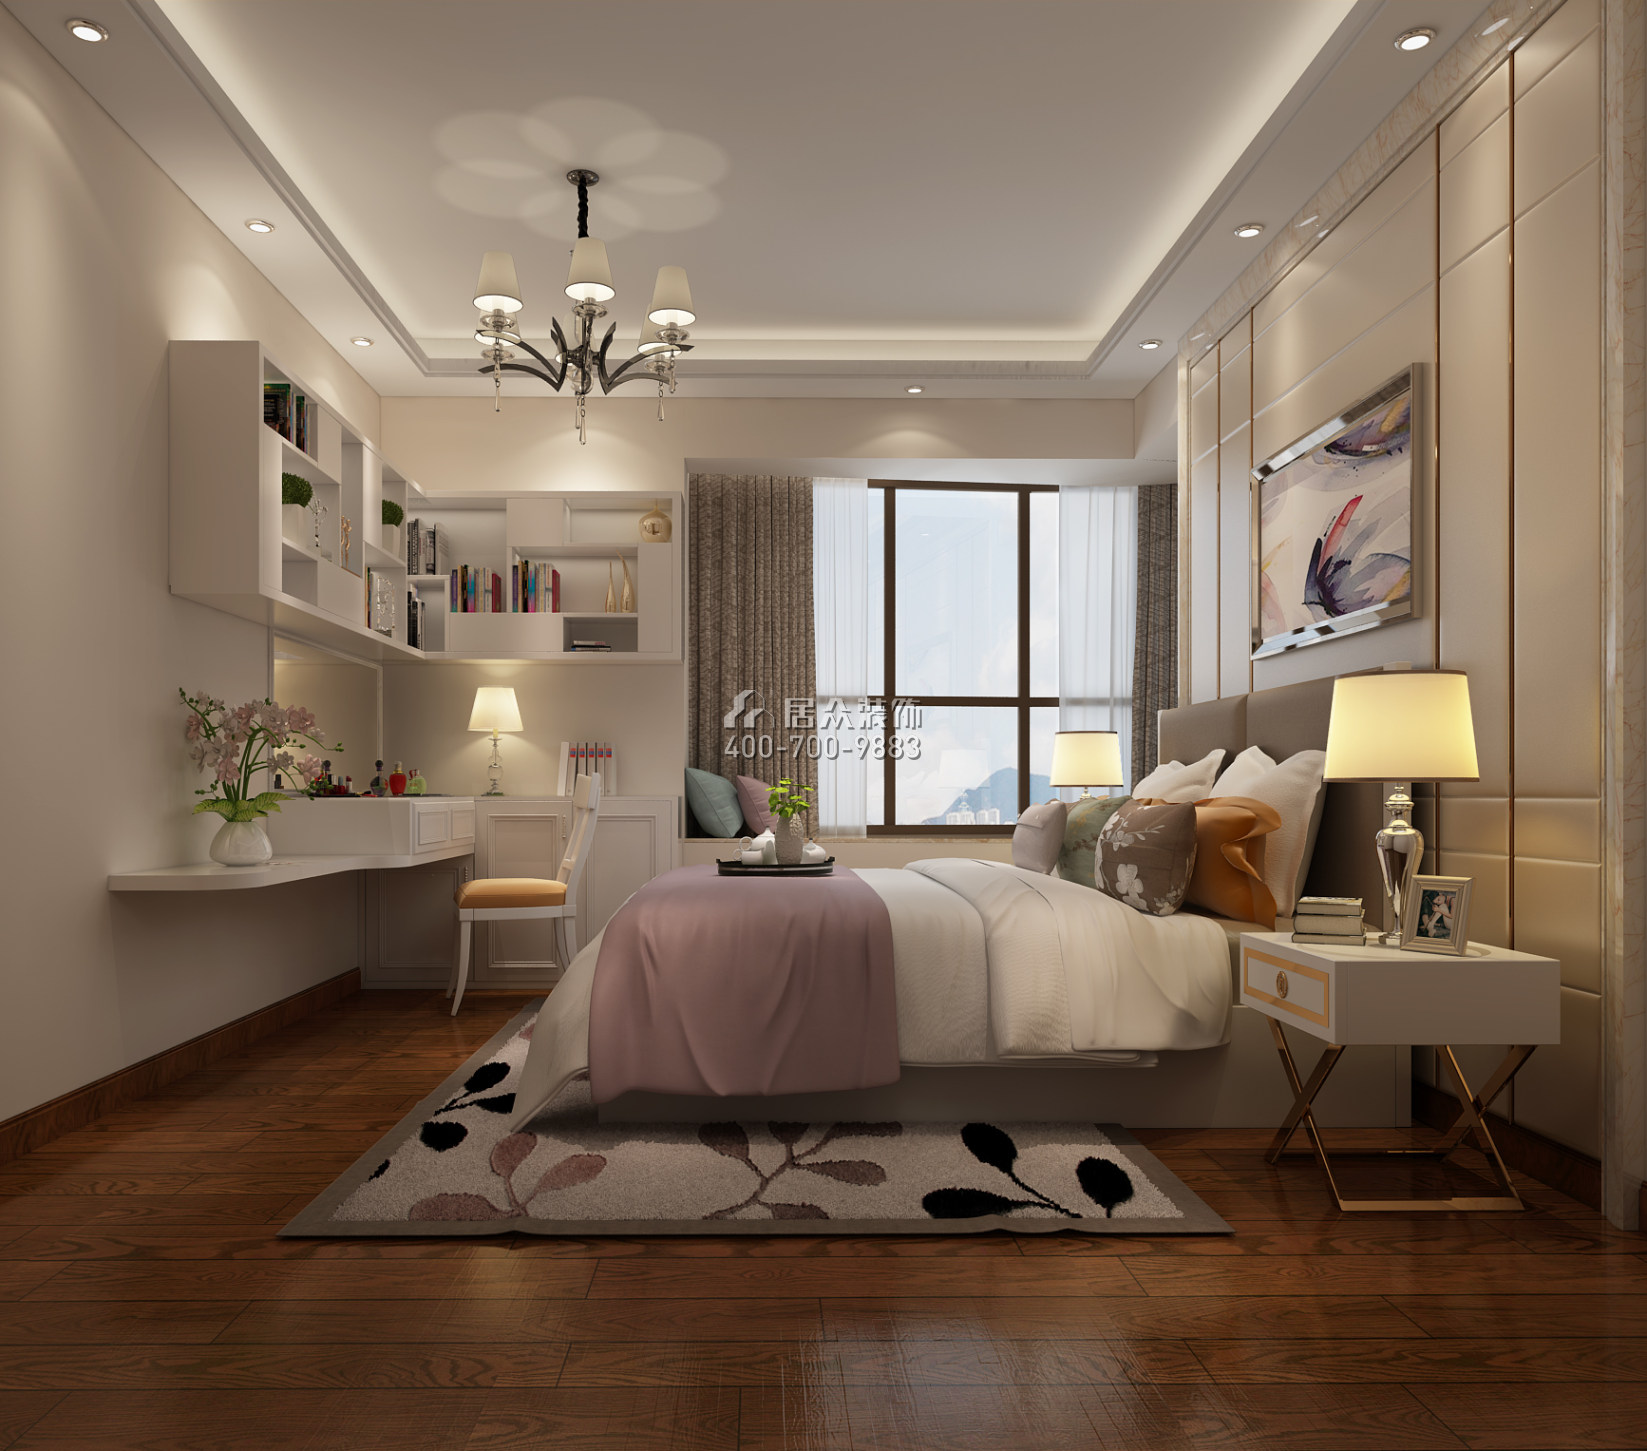 中伦东海岸121平方米现代简约风格平层户型卧室装修效果图